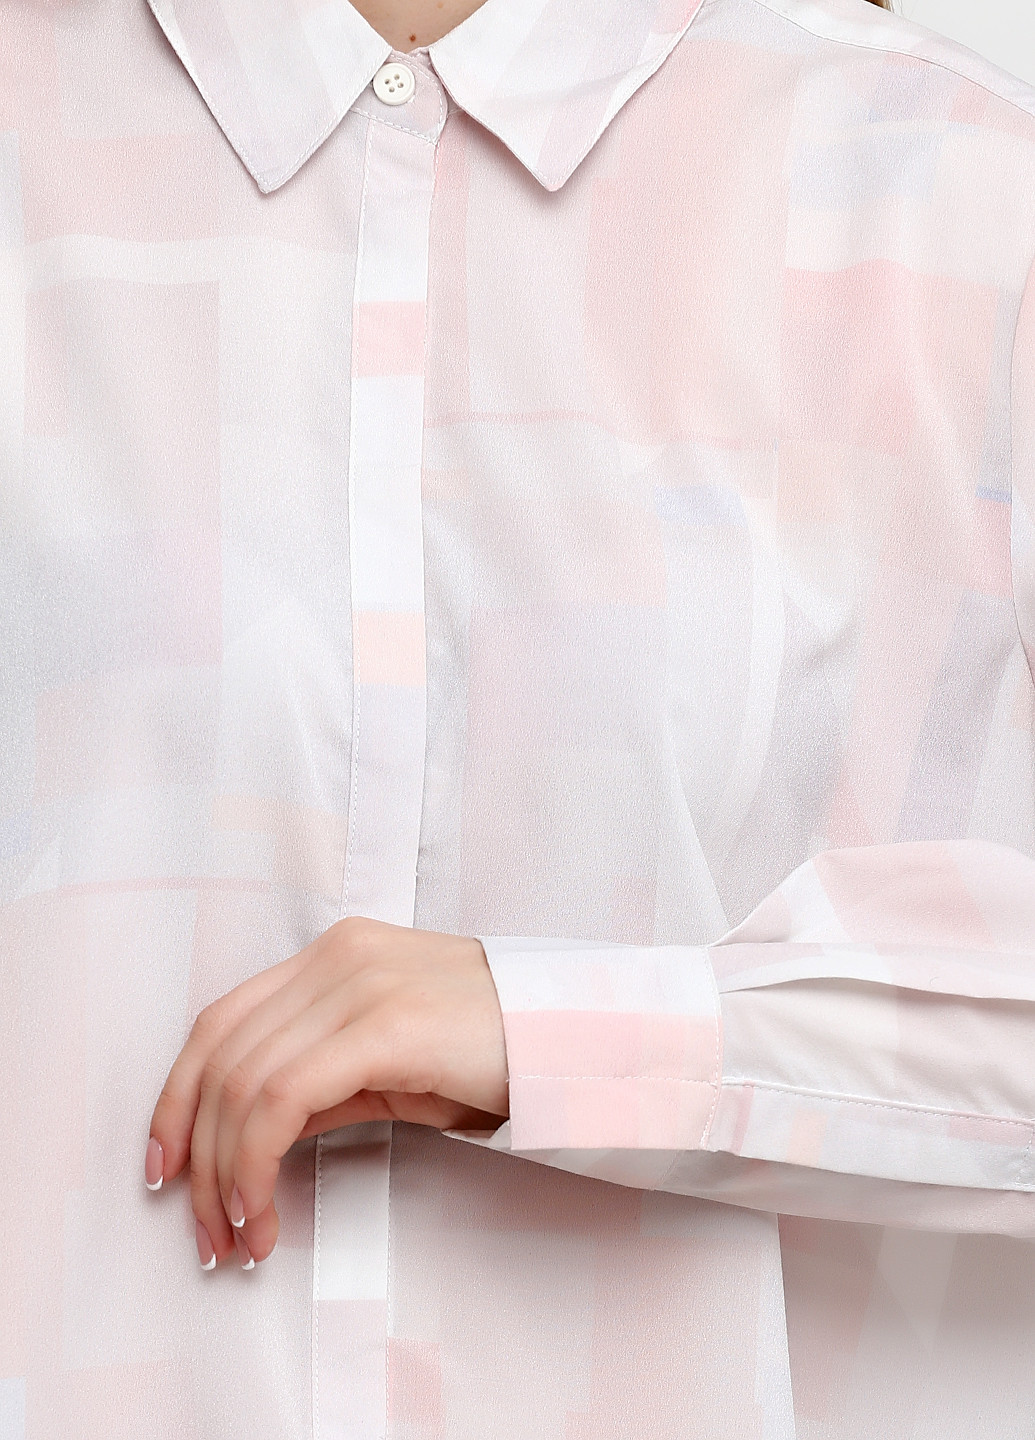 Блідо-рожева демісезонна блуза MBYM